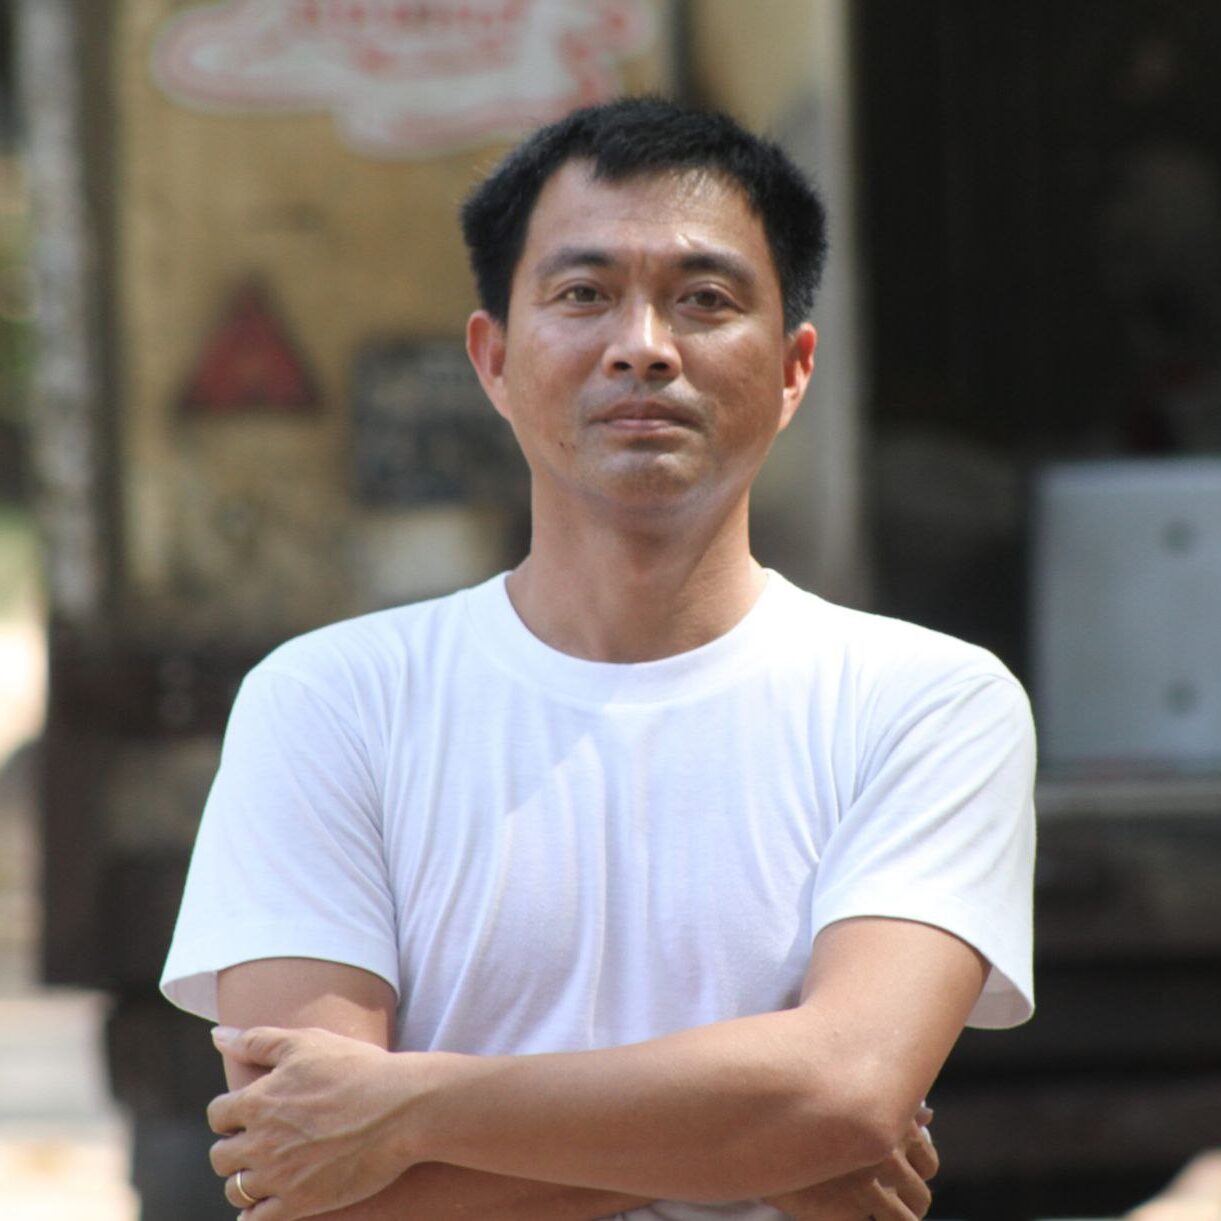 Mr. Pheng Khemara